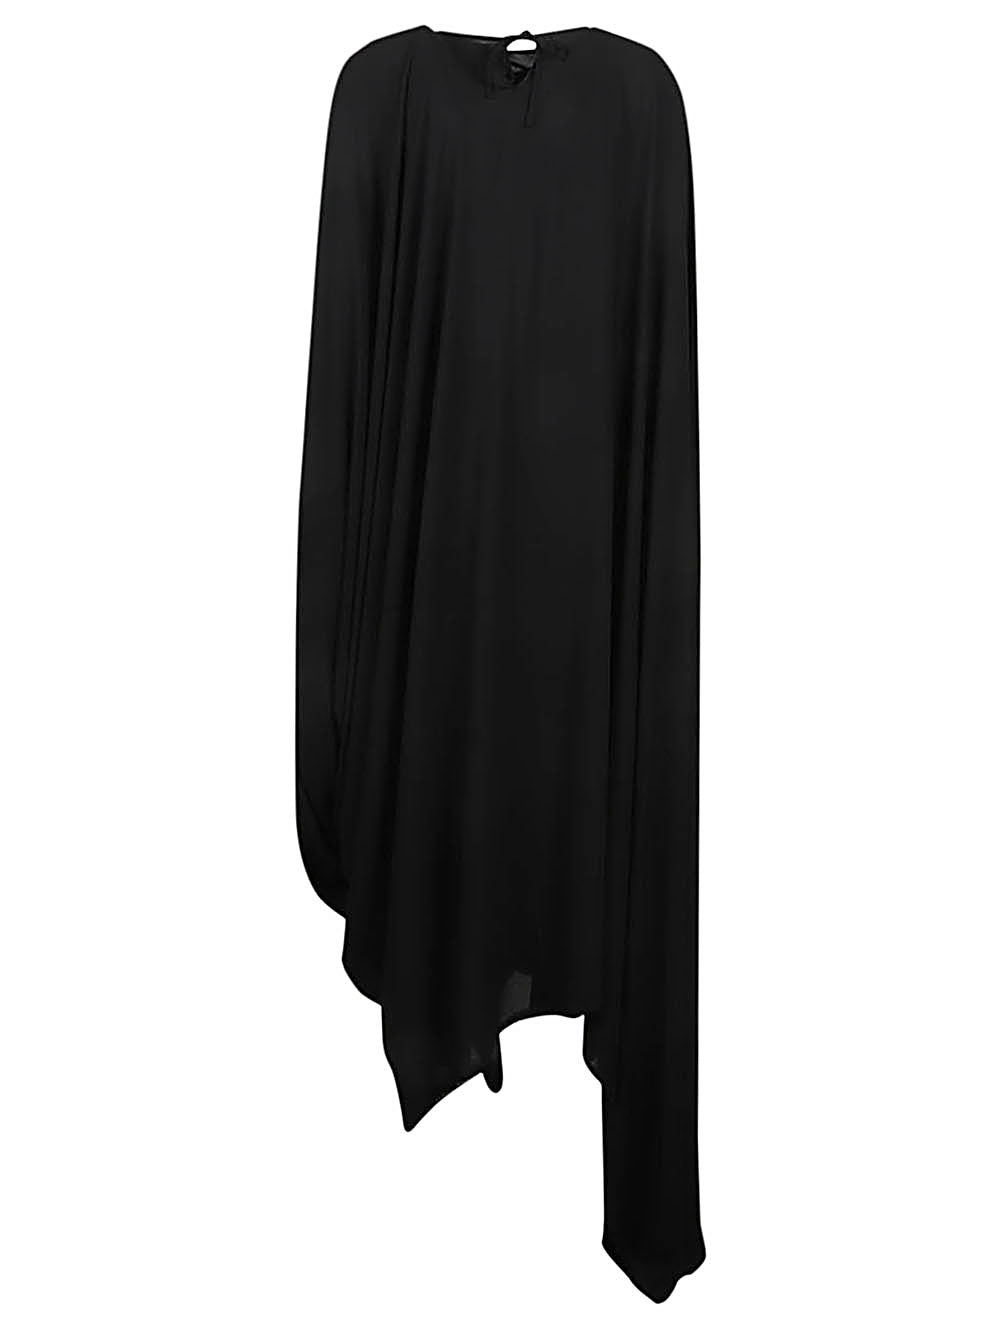 Đầm Cổ V đen với tay dài Asymmetrical cho phụ nữ